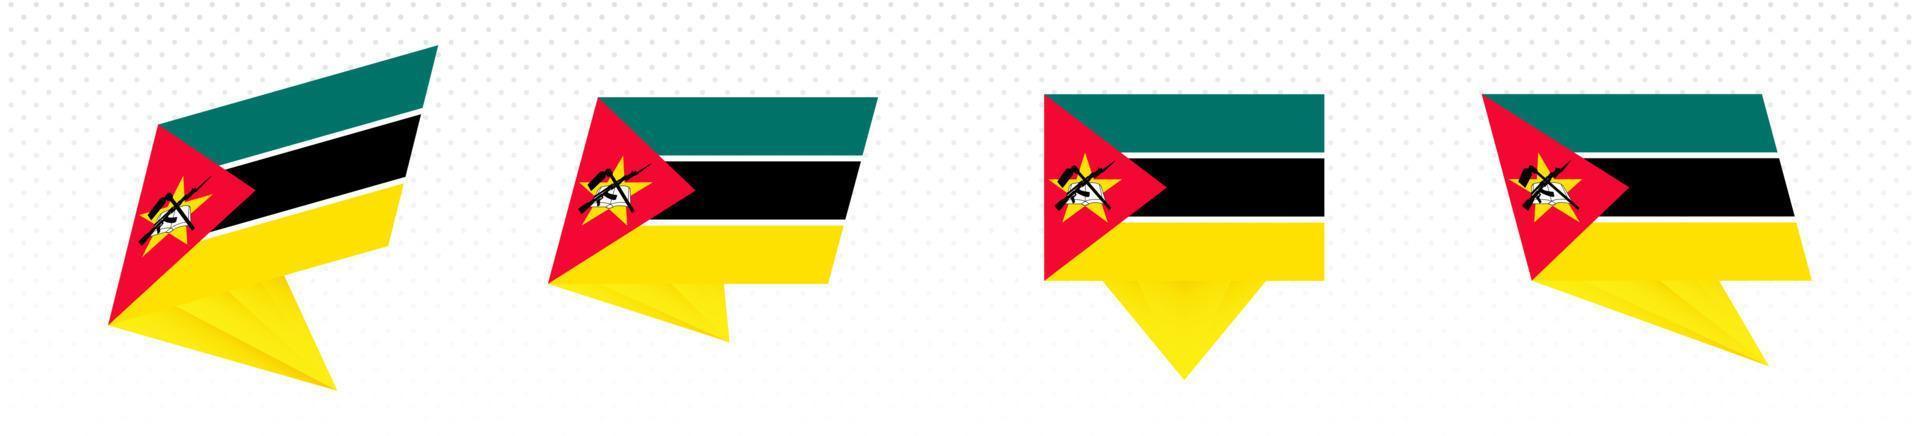 Flagge von Mosambik im modernen abstrakten Design, Flaggensatz. vektor